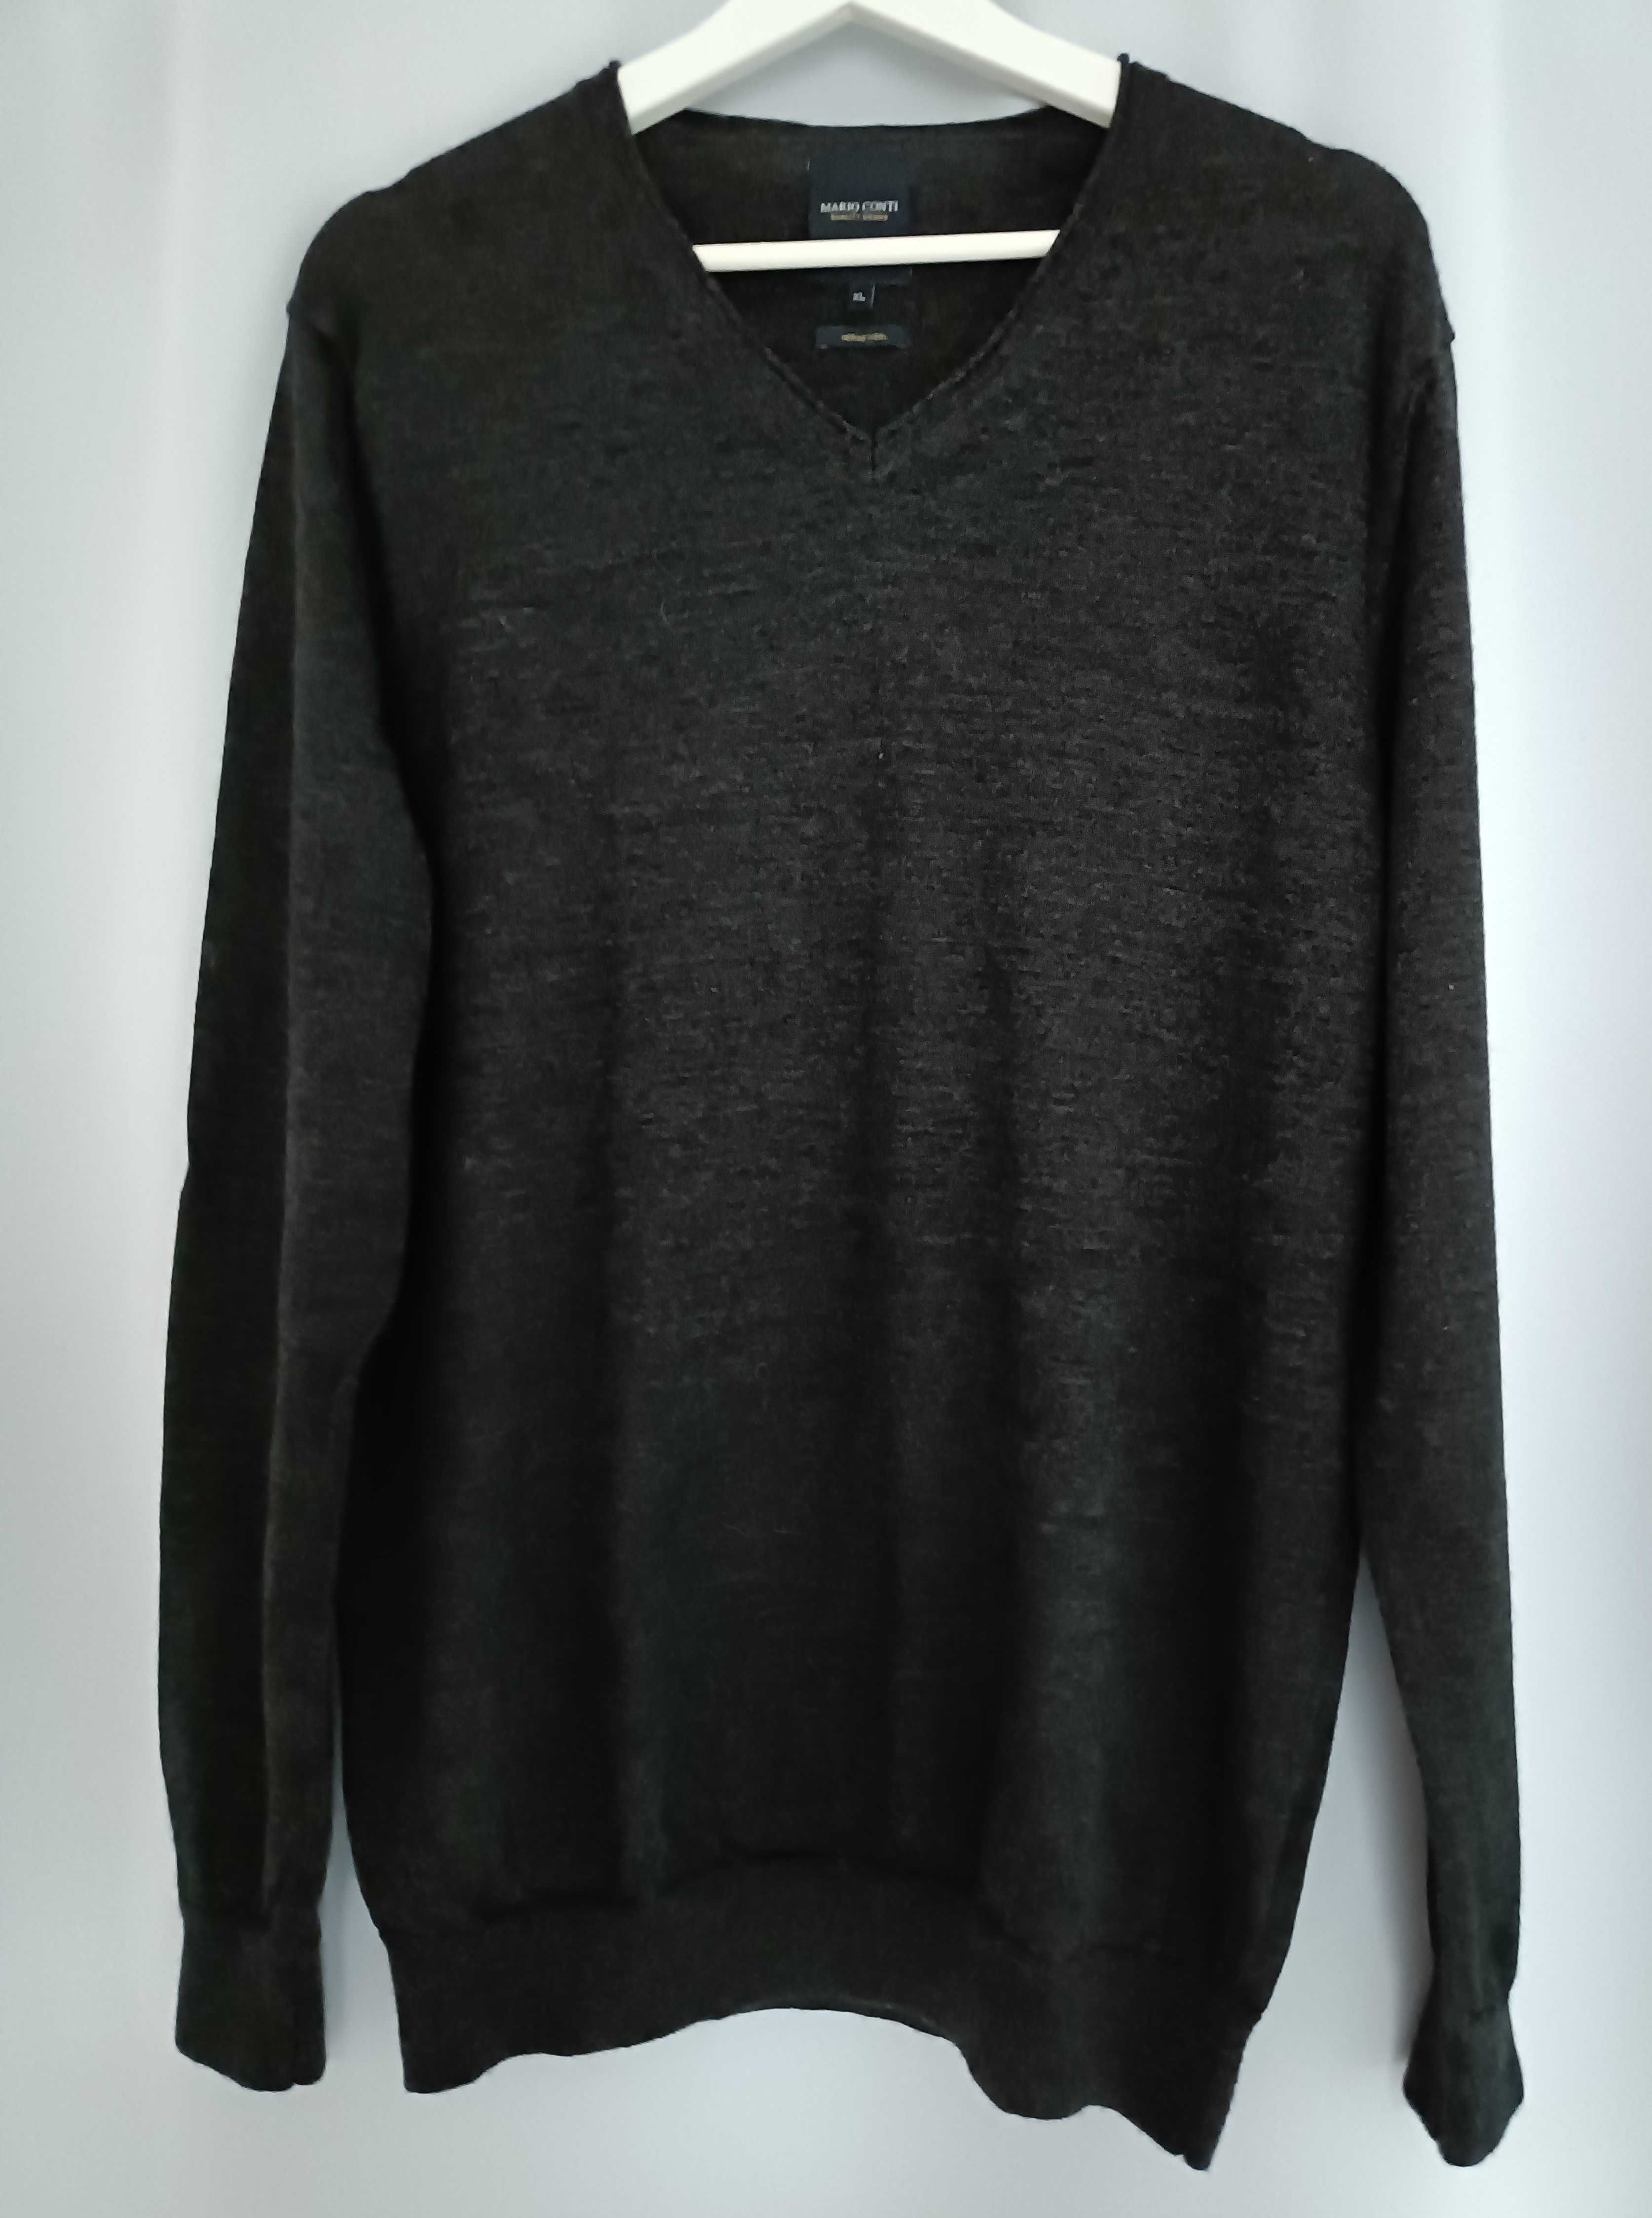 Sweterek męski, 100% merino wool, Mario Conti, rozmiar XL